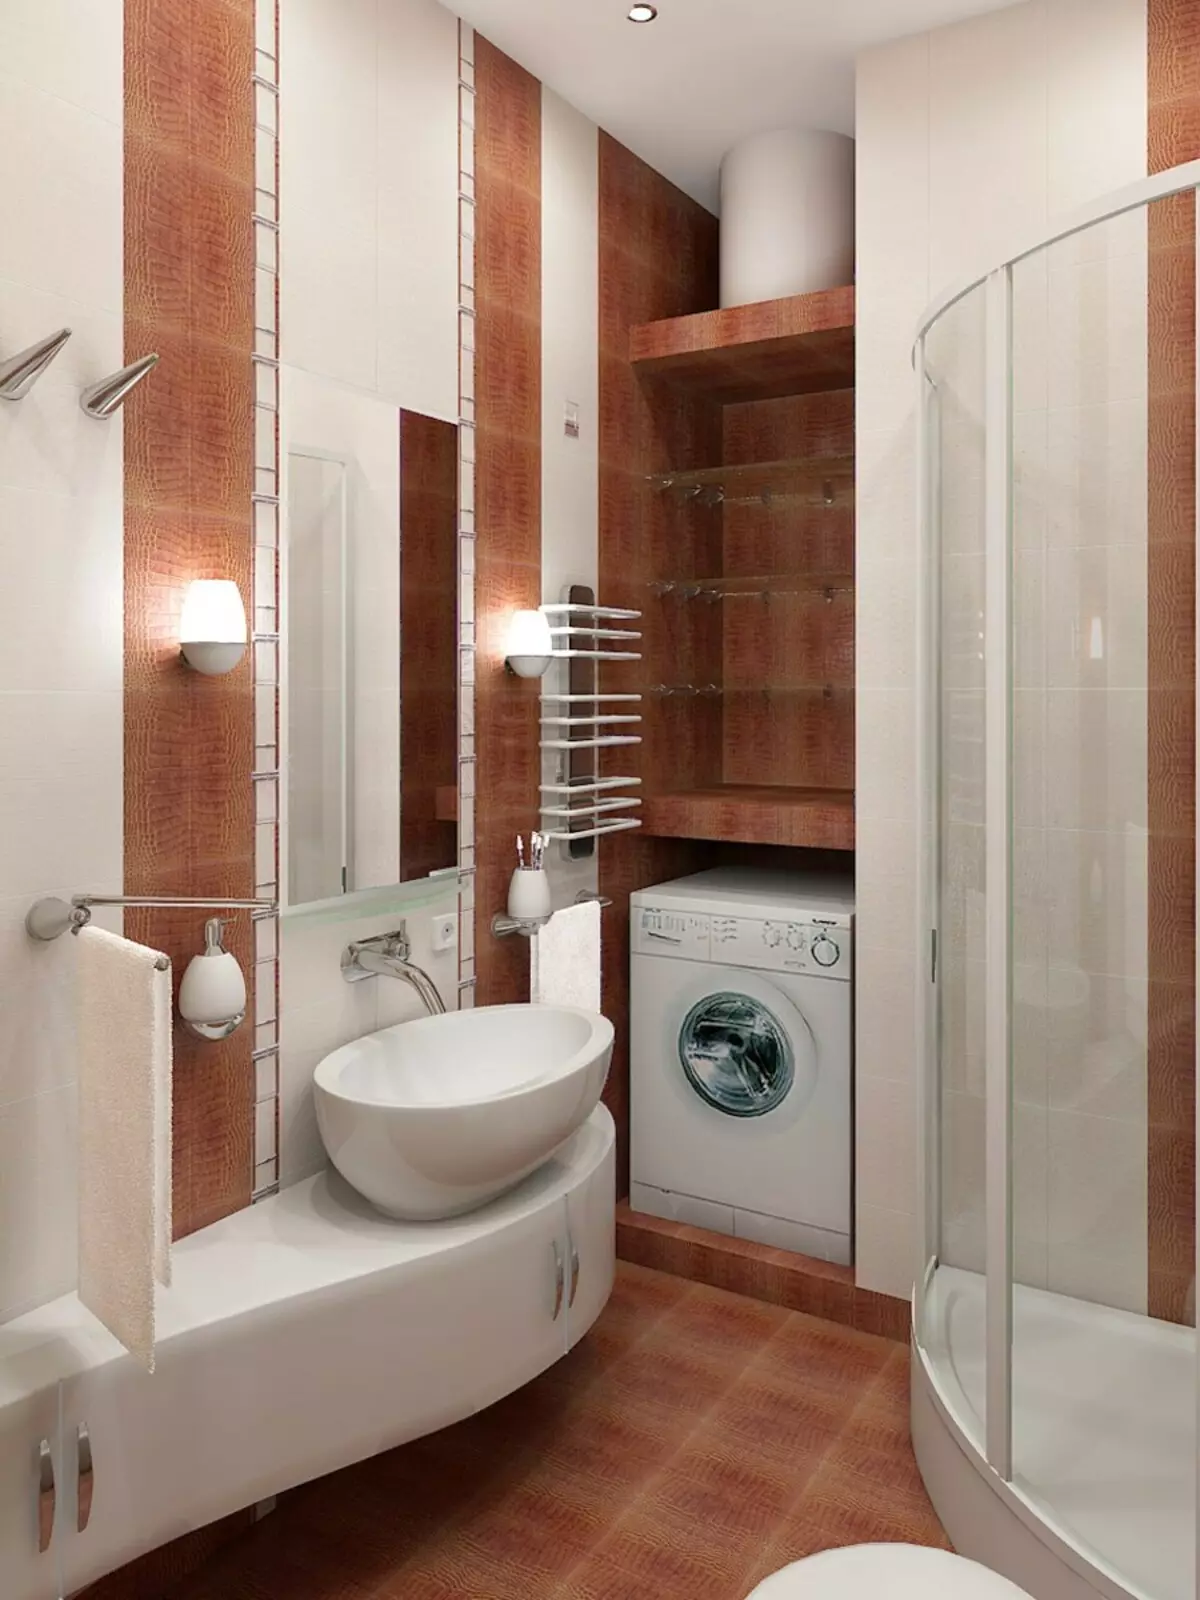 Ванная комната дизайн мал размер. Ванна 2x2 с душевой кабинкой. Малогабаритные Ванные комнаты. Интерьер маленькой ванной комнаты. Ванная комната не большпя.